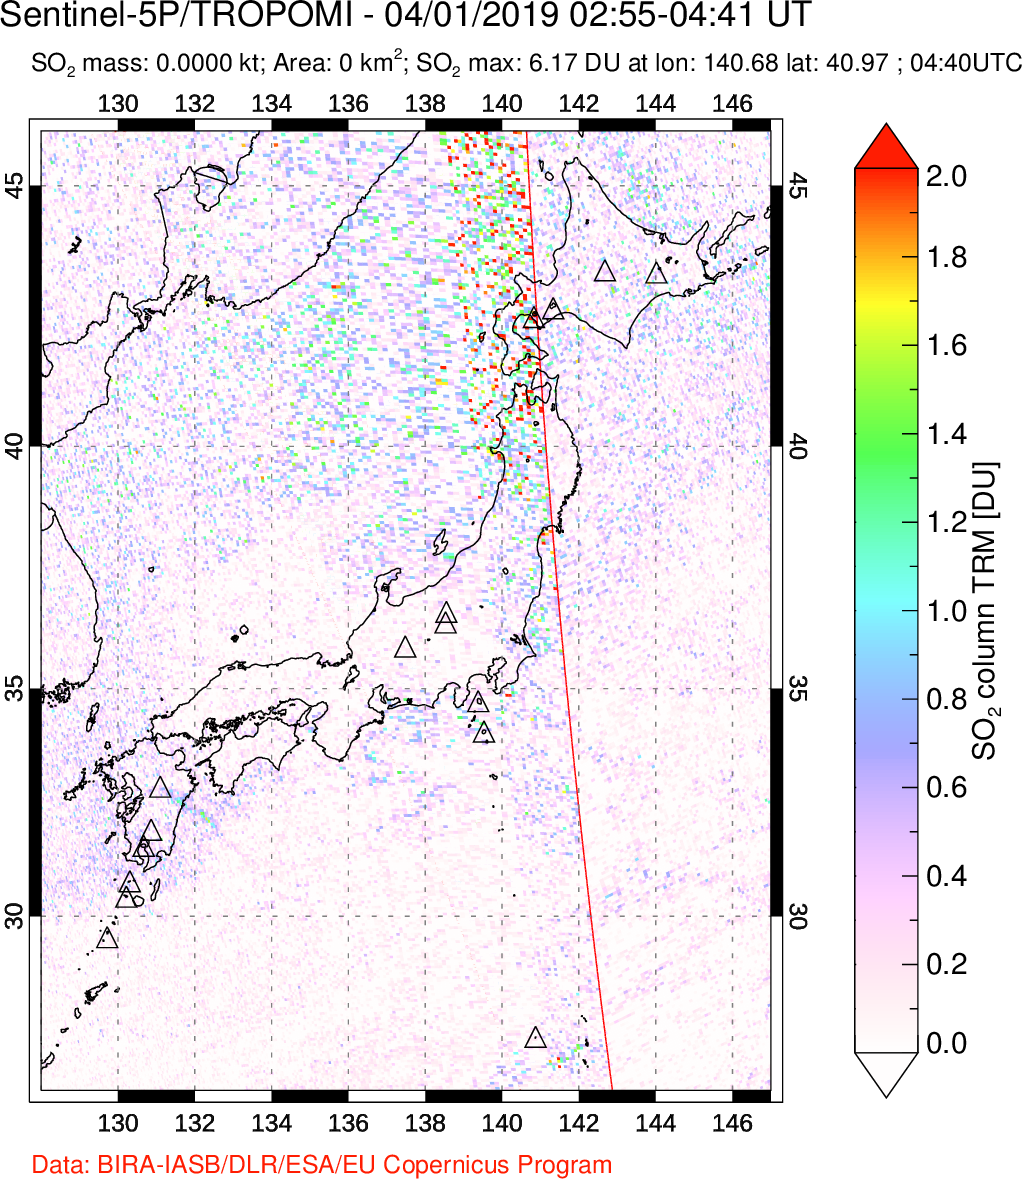 A sulfur dioxide image over Japan on Apr 01, 2019.